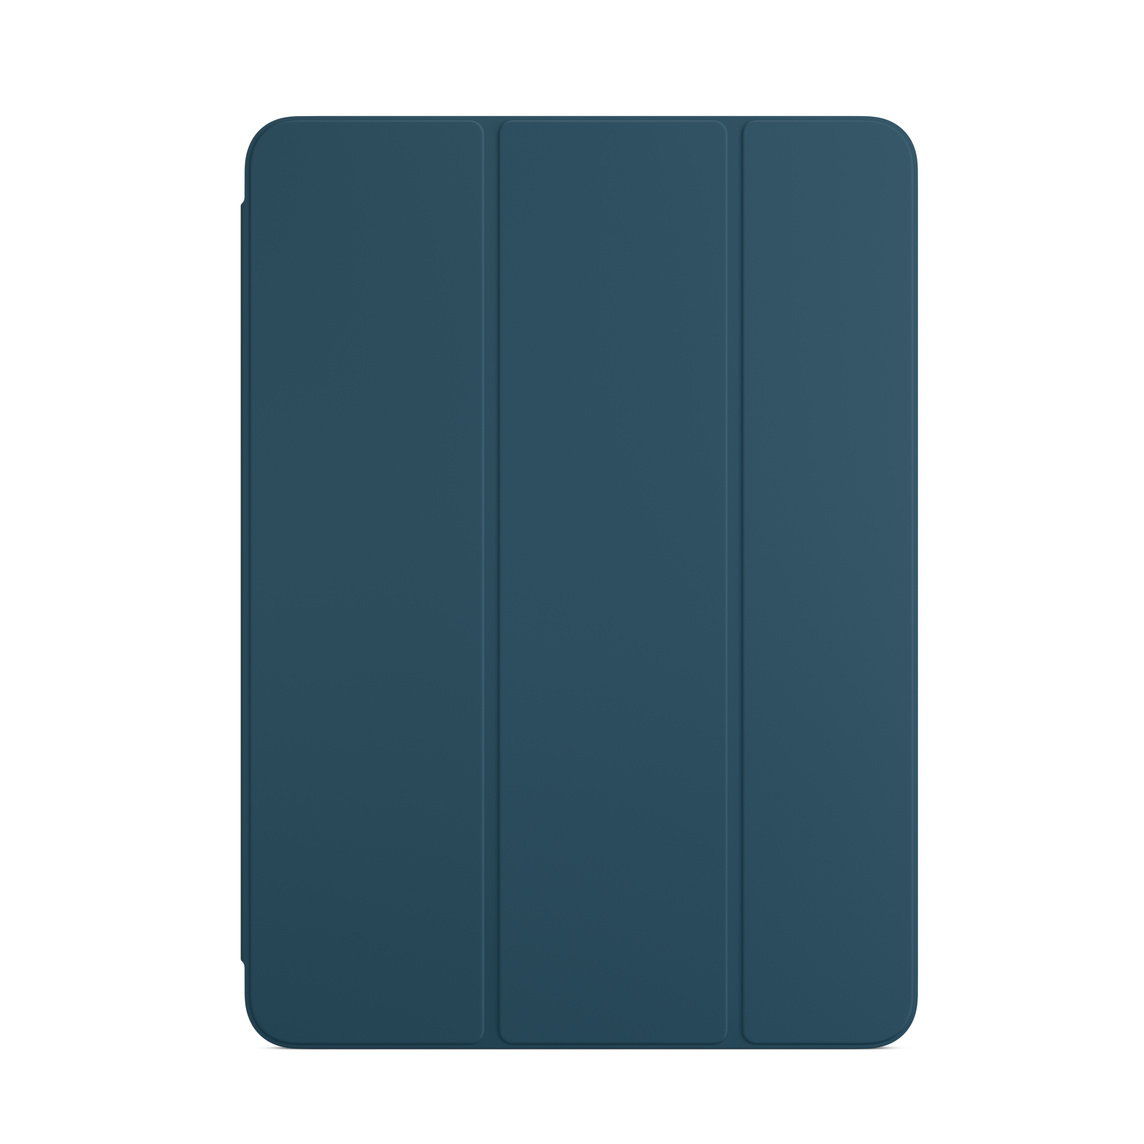 適用於 iPad Air 的海藍色聰穎雙面夾